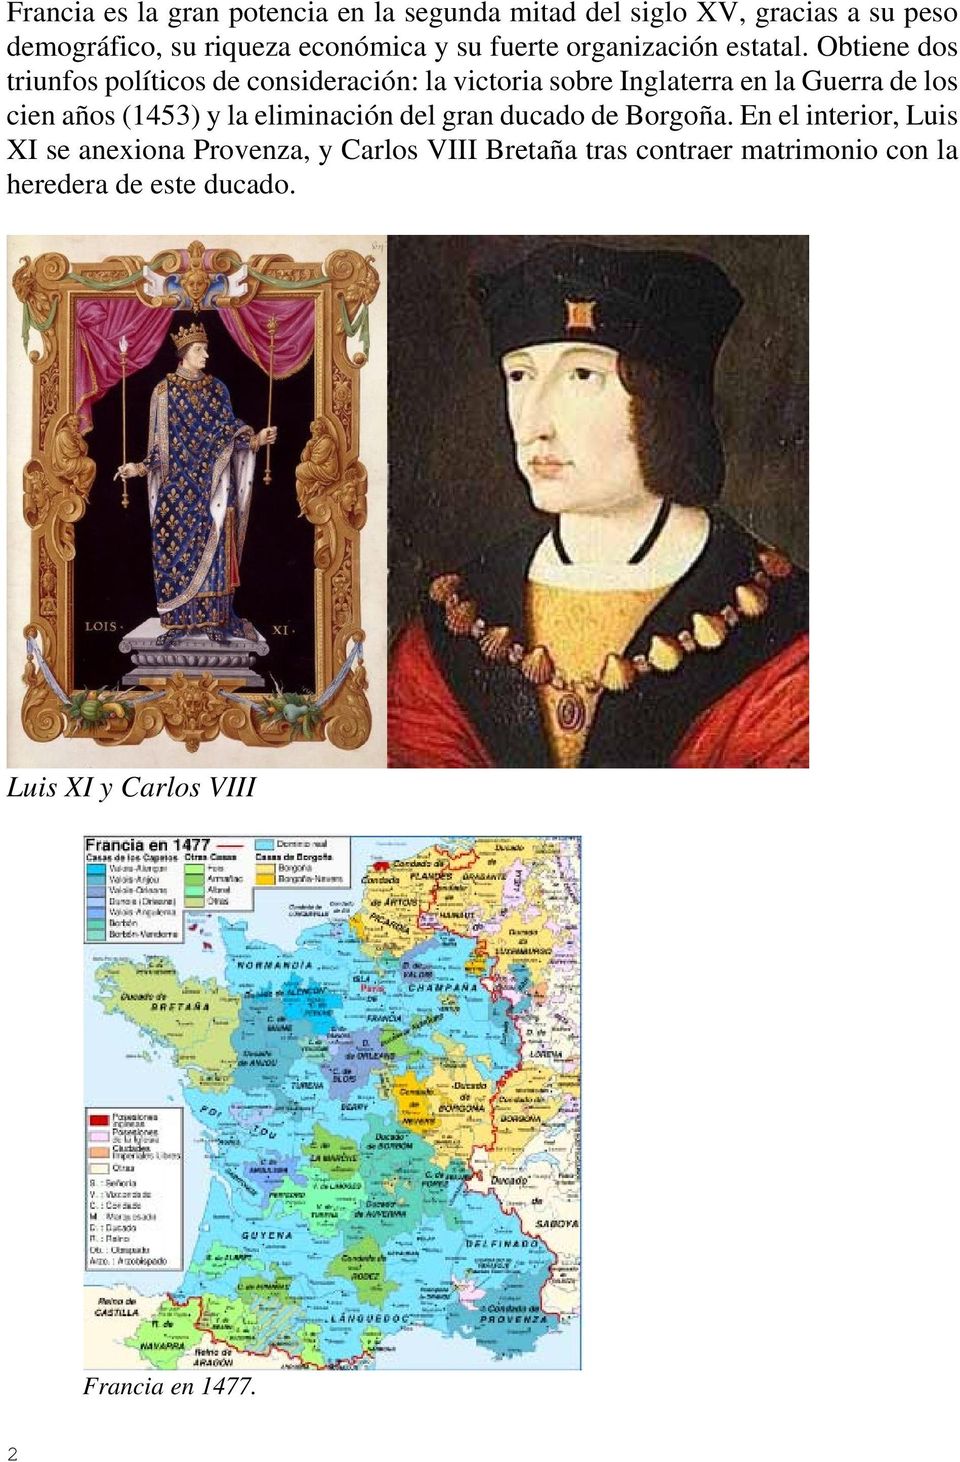 Obtiene dos triunfos políticos de consideración: la victoria sobre Inglaterra en la Guerra de los cien años (1453) y